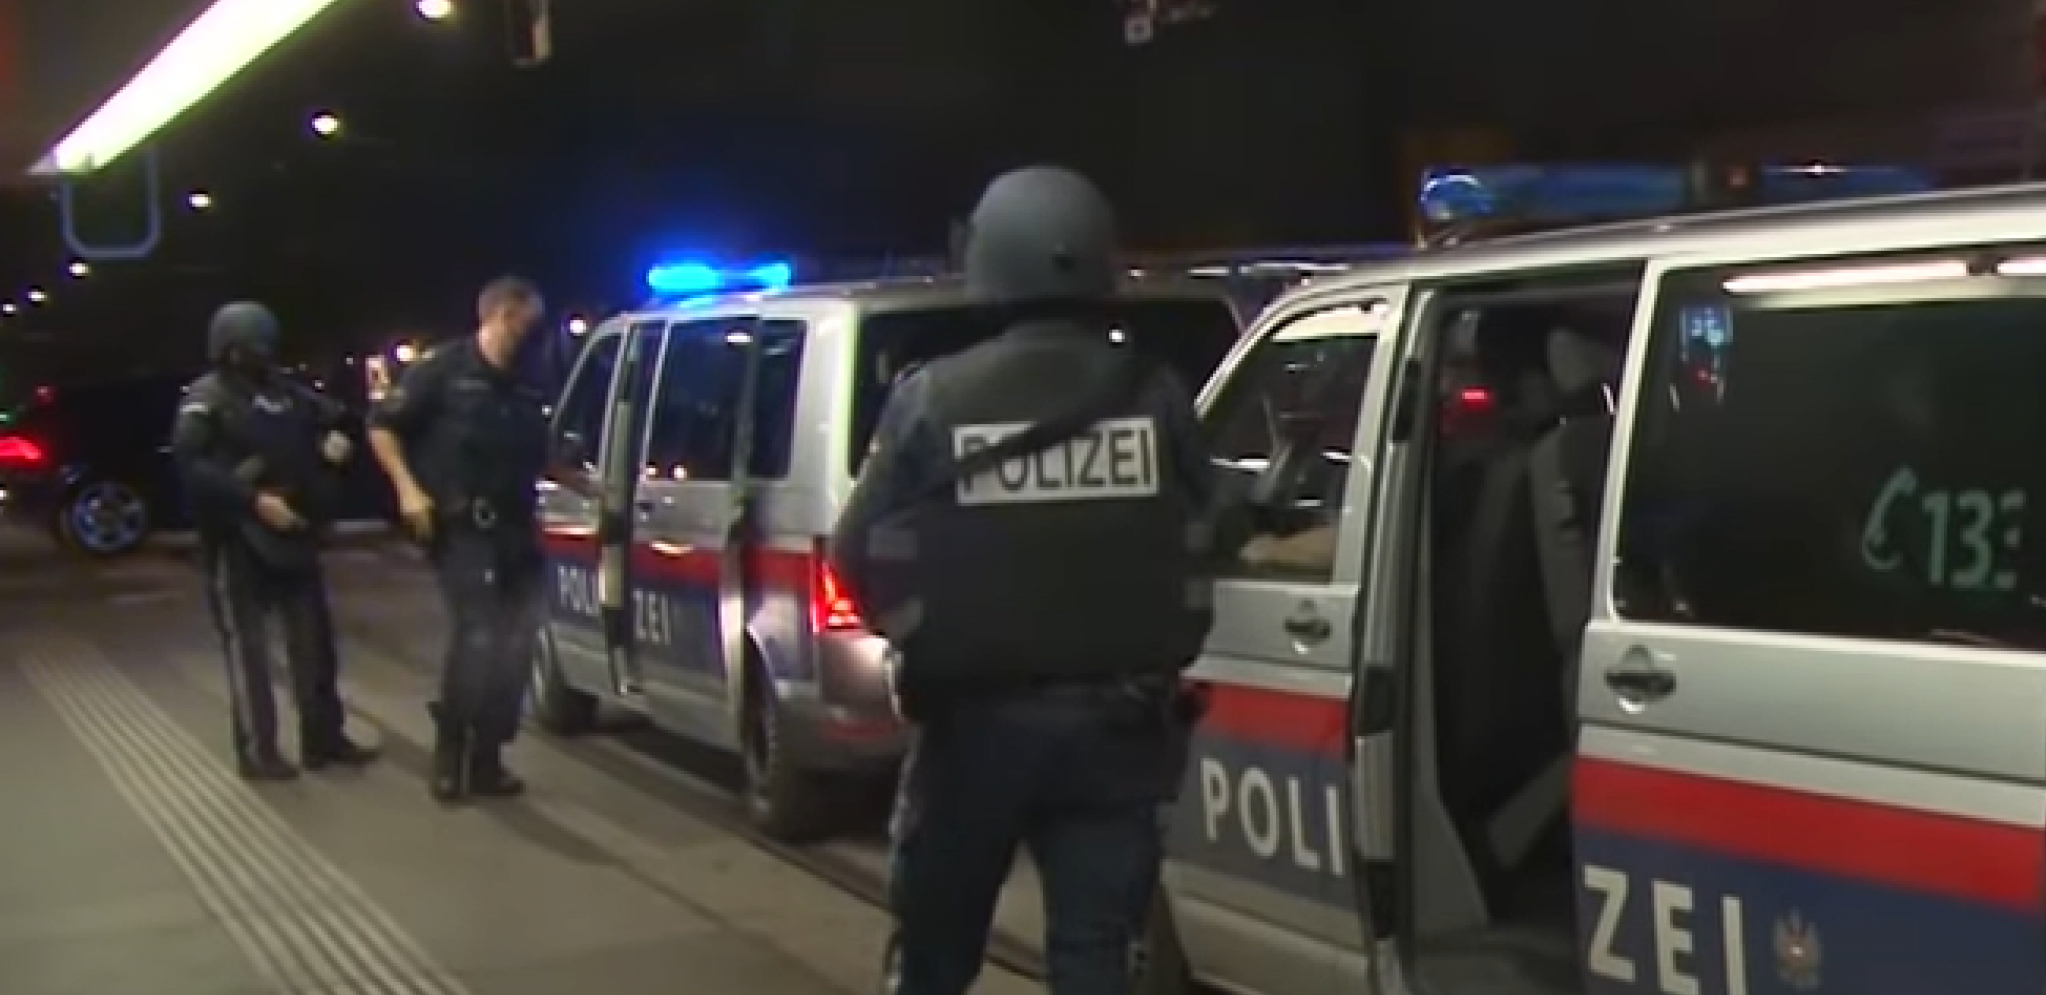 IZ KAFANE TREŠTALI NARODNJACI! Balkanci kršili policijski čas u Beču - intervenisala policija